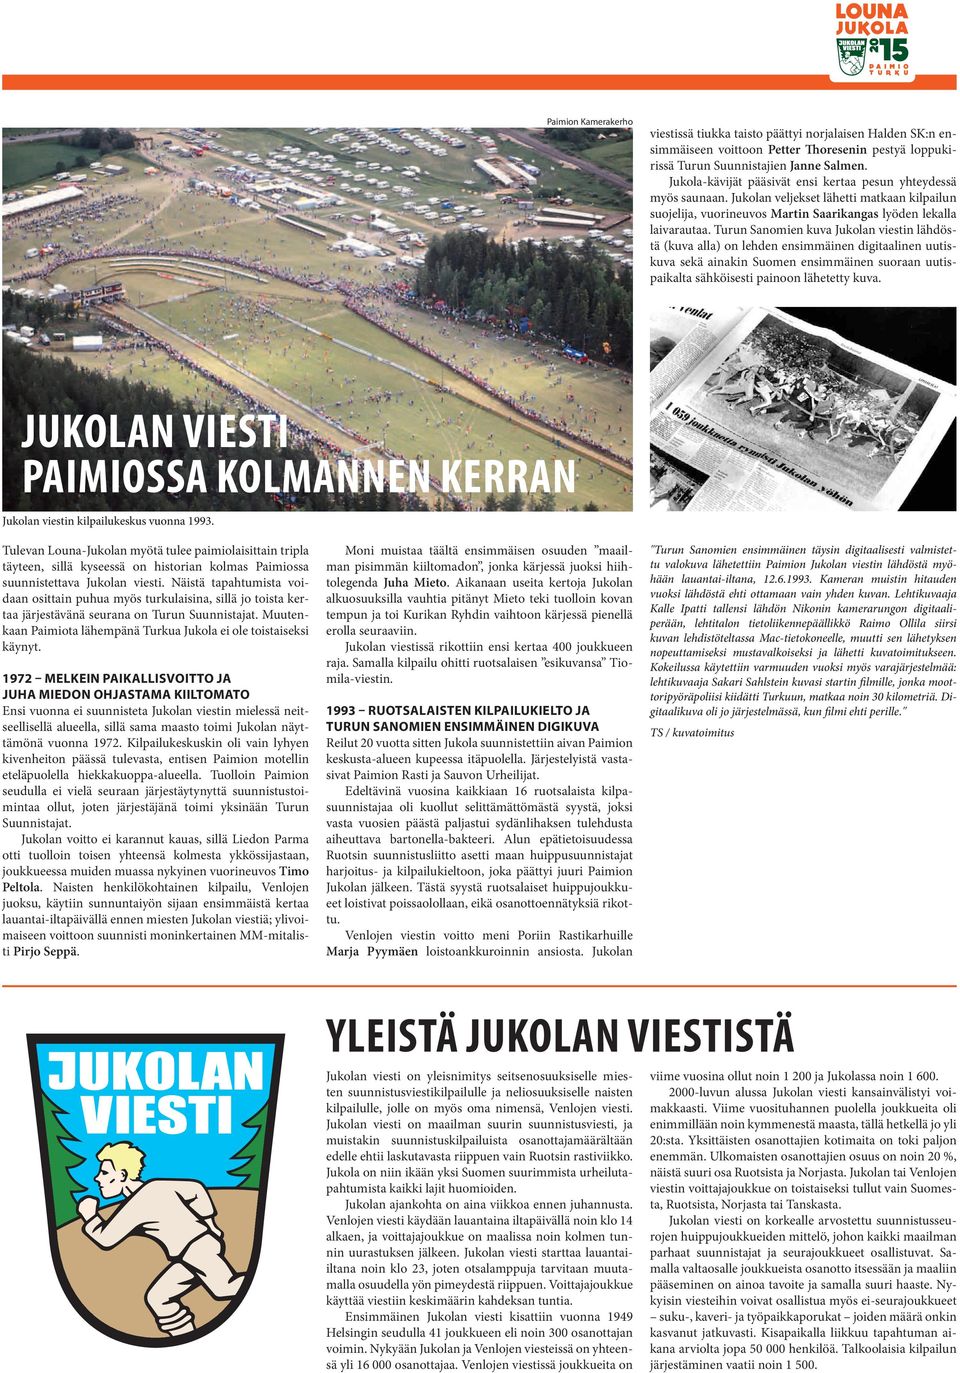 Turun Sanomien kuva Jukolan viestin lähdöstä (kuva alla) on lehden ensimmäinen digitaalinen uutiskuva sekä ainakin Suomen ensimmäinen suoraan uutispaikalta sähköisesti painoon lähetetty kuva.